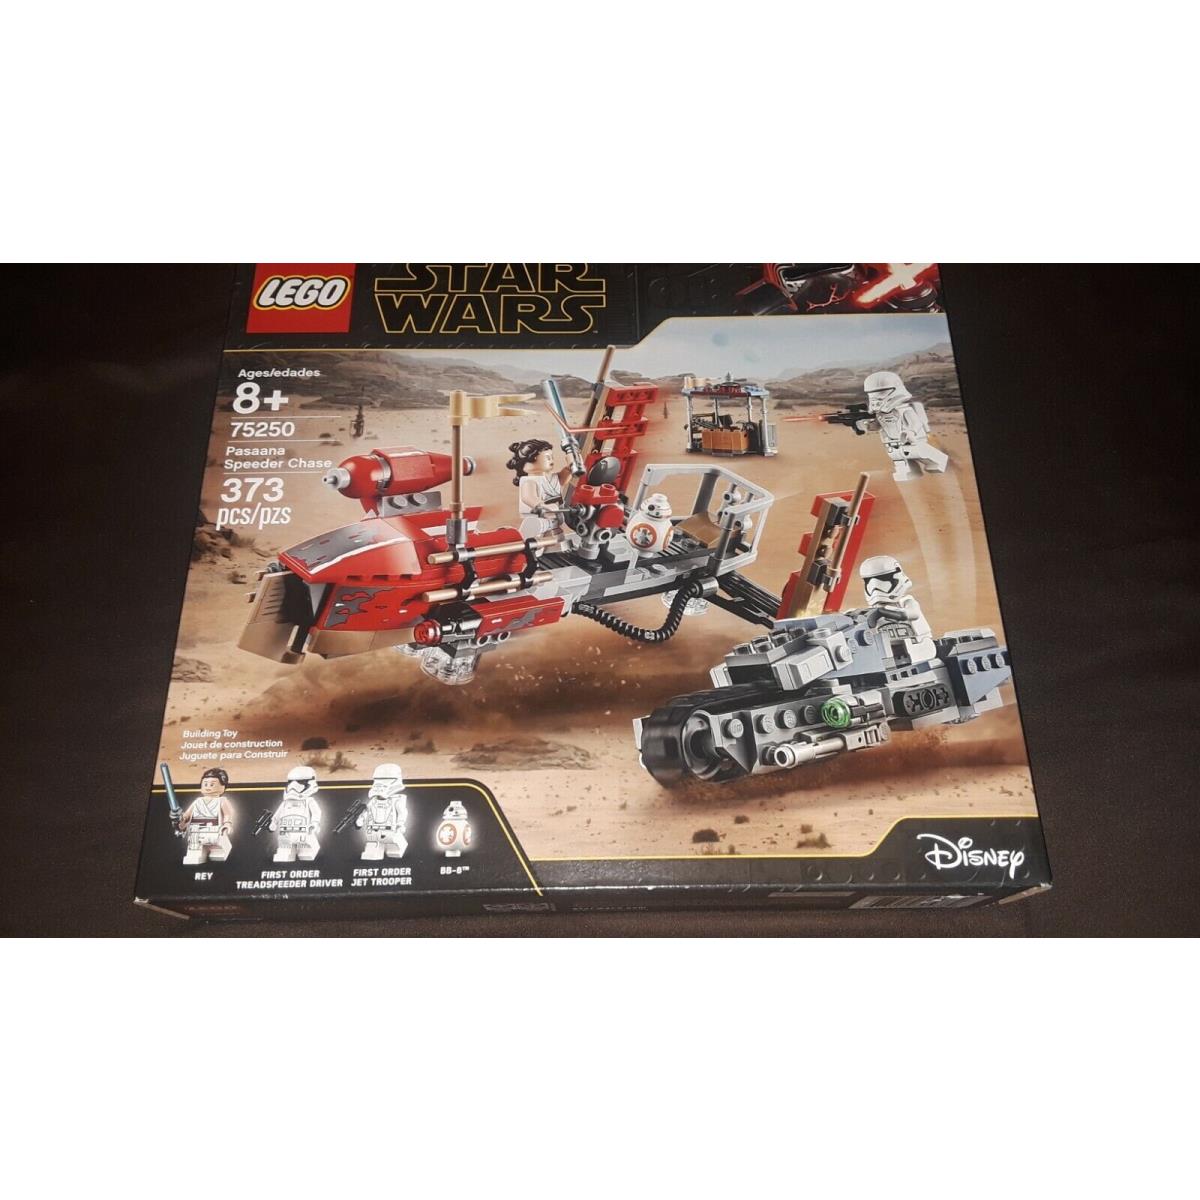 Lego Star Wars 75250 Pasaana Speeder Chase New/ Sealed/ Retired Ffs